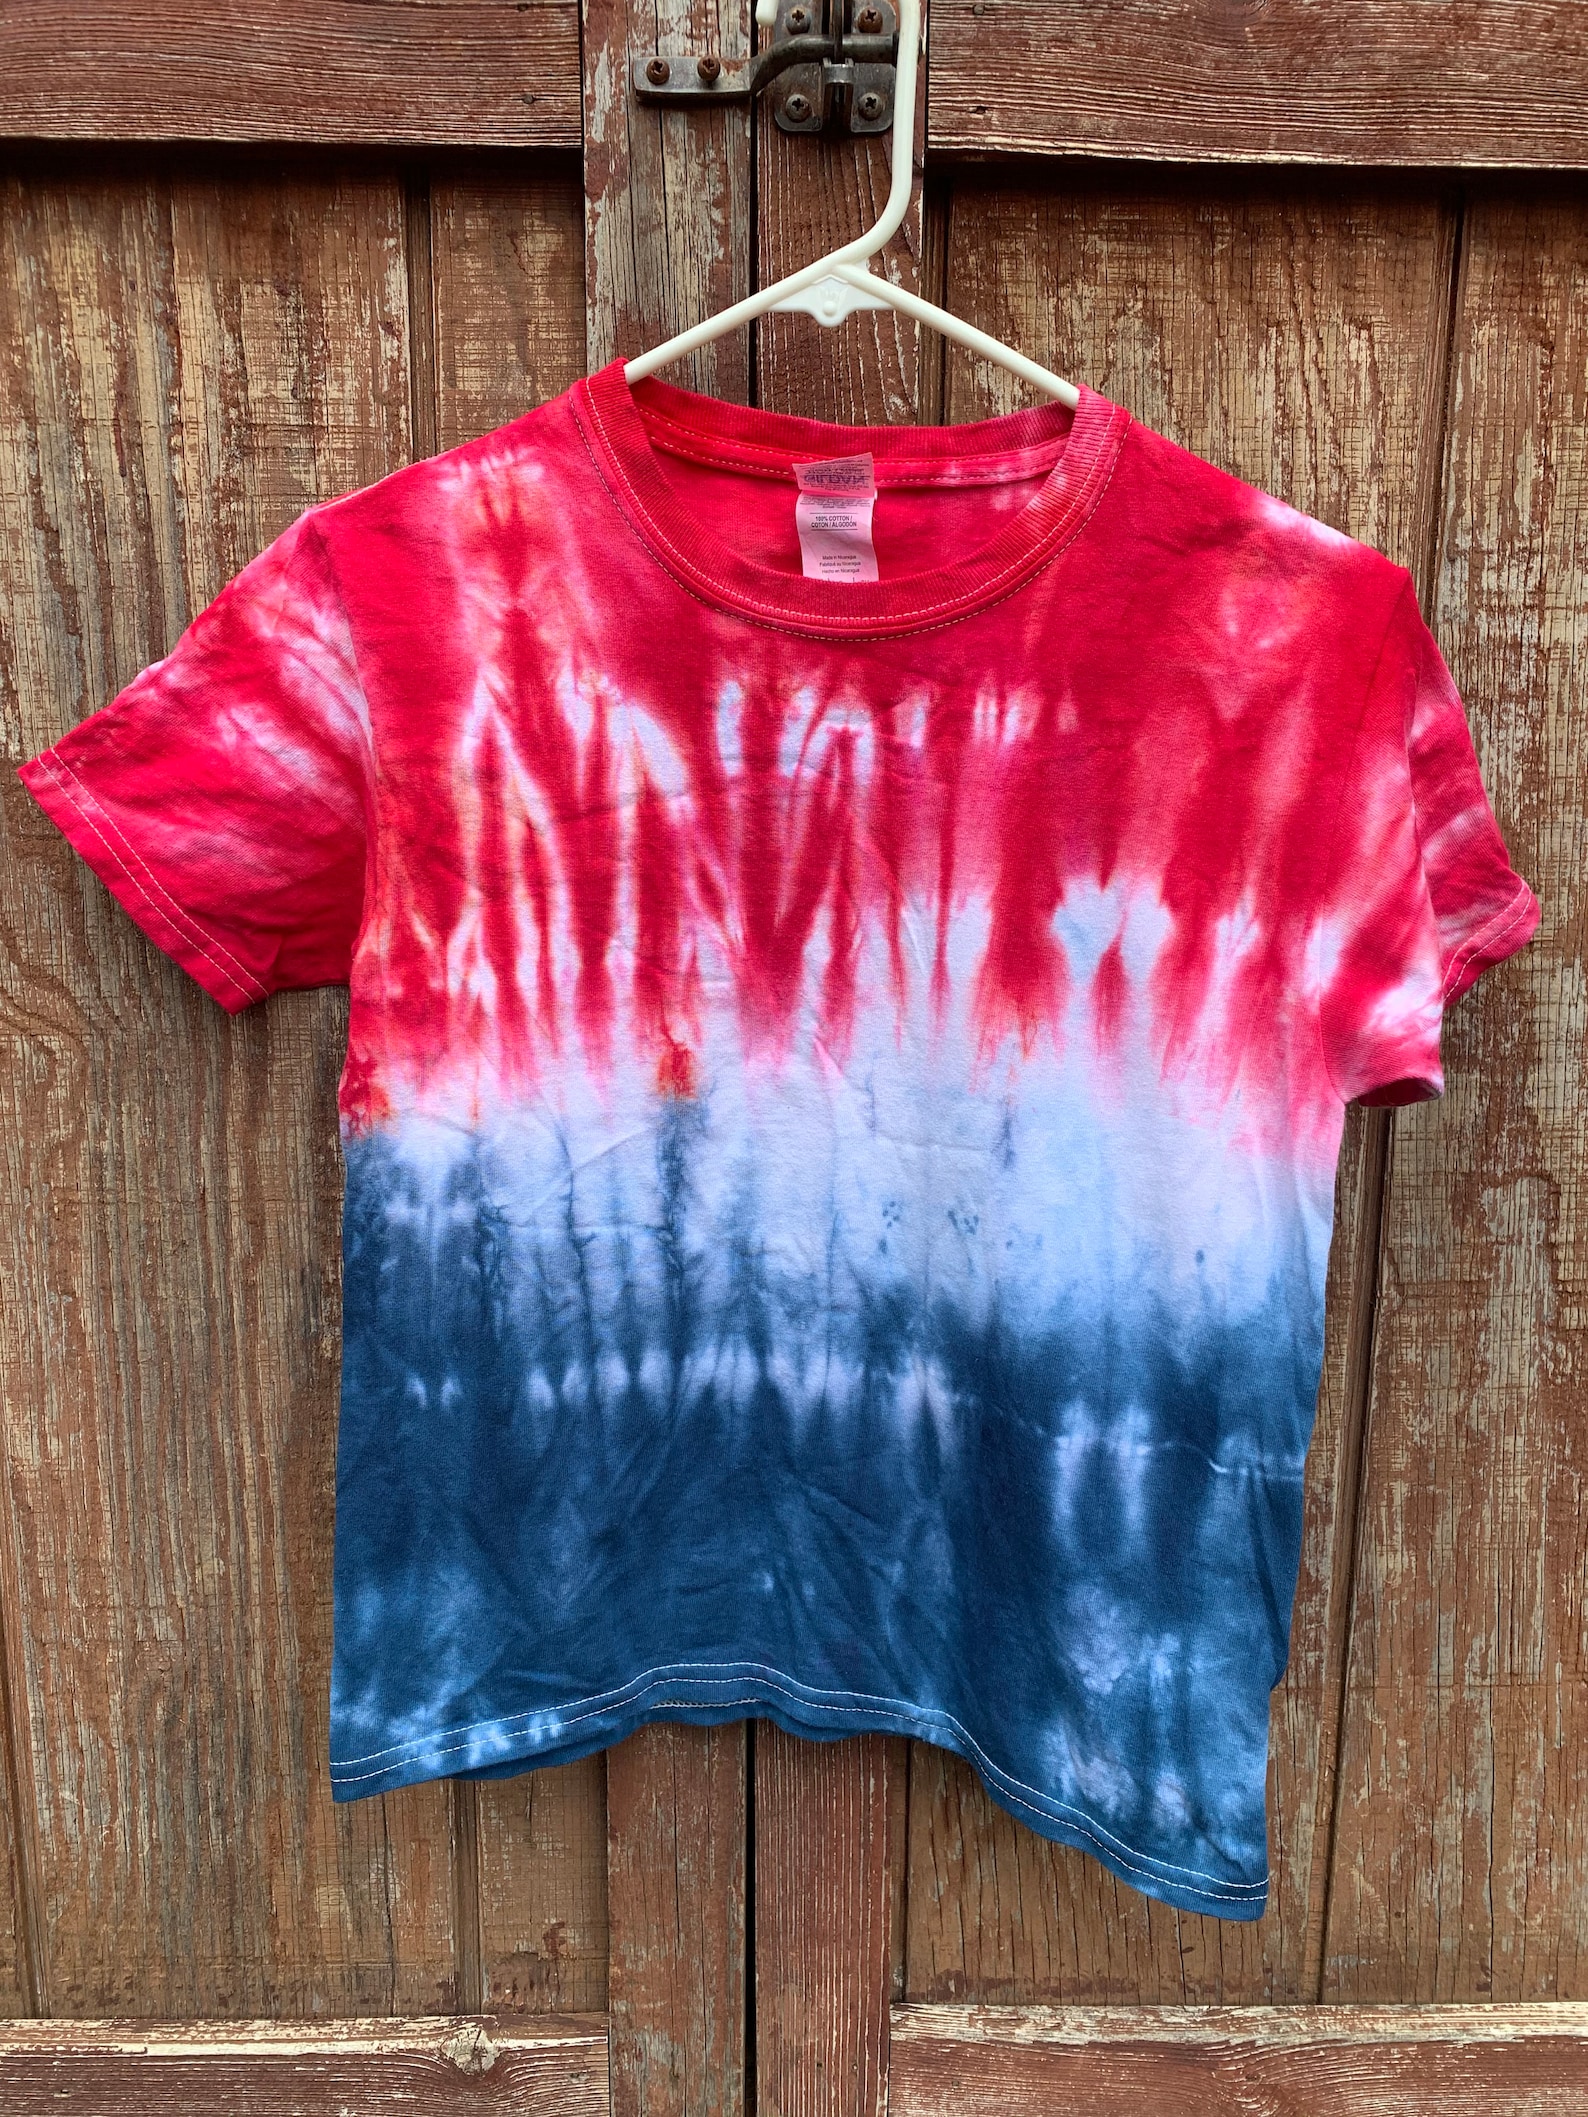 Patriotic Color Block Tie Dye T-shirt // Unisex Kids T-shirt - Etsy